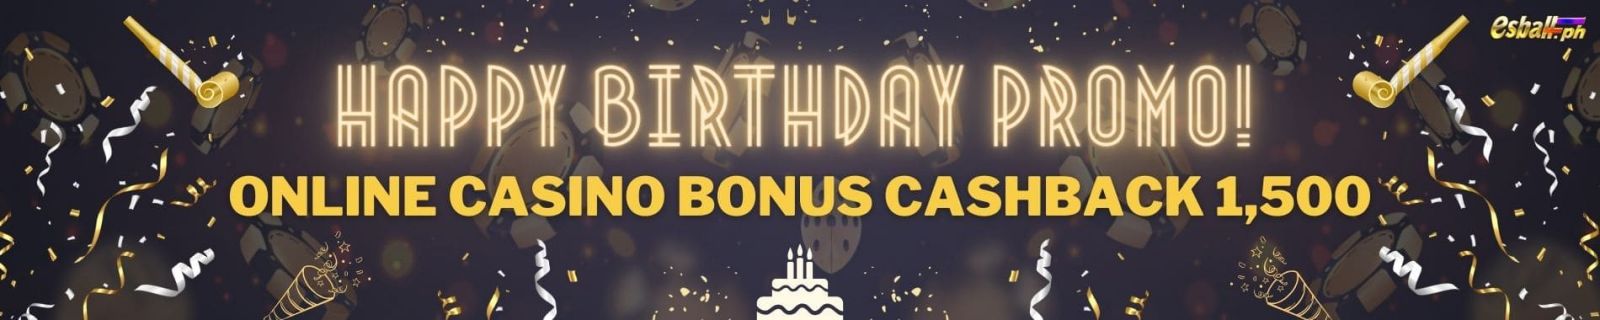 Happy Birthday Promo! Online Casino bonus Cashback 1,500